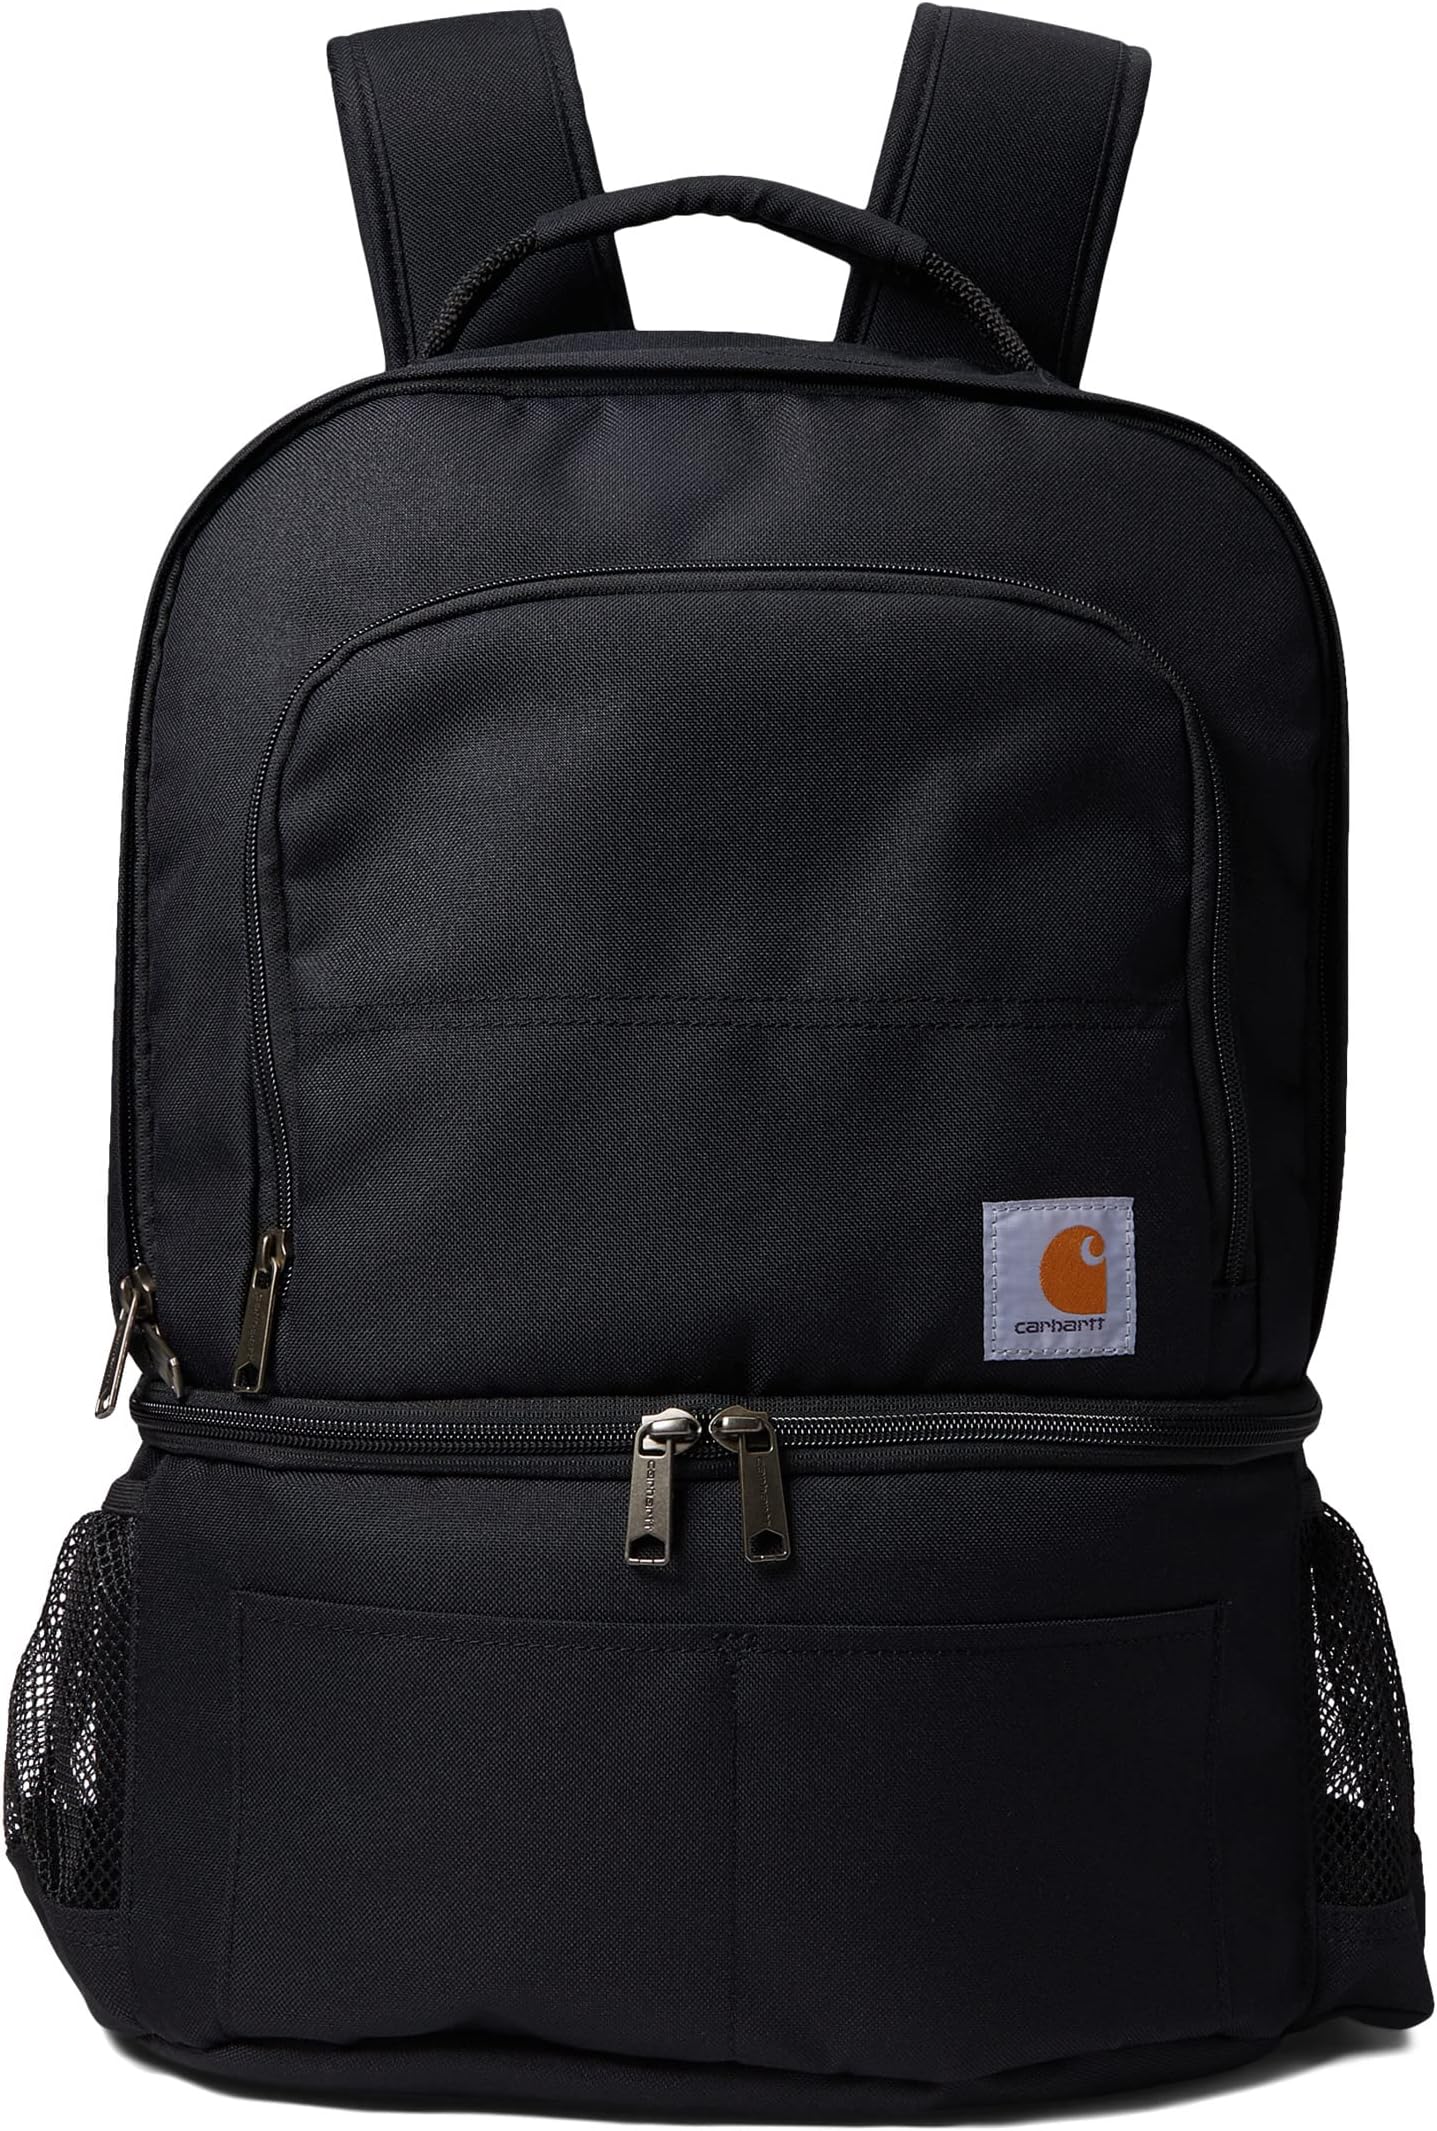 Рюкзак Insulated 24 Can Two Compartment Cooler Backpack Carhartt, черный цена и фото